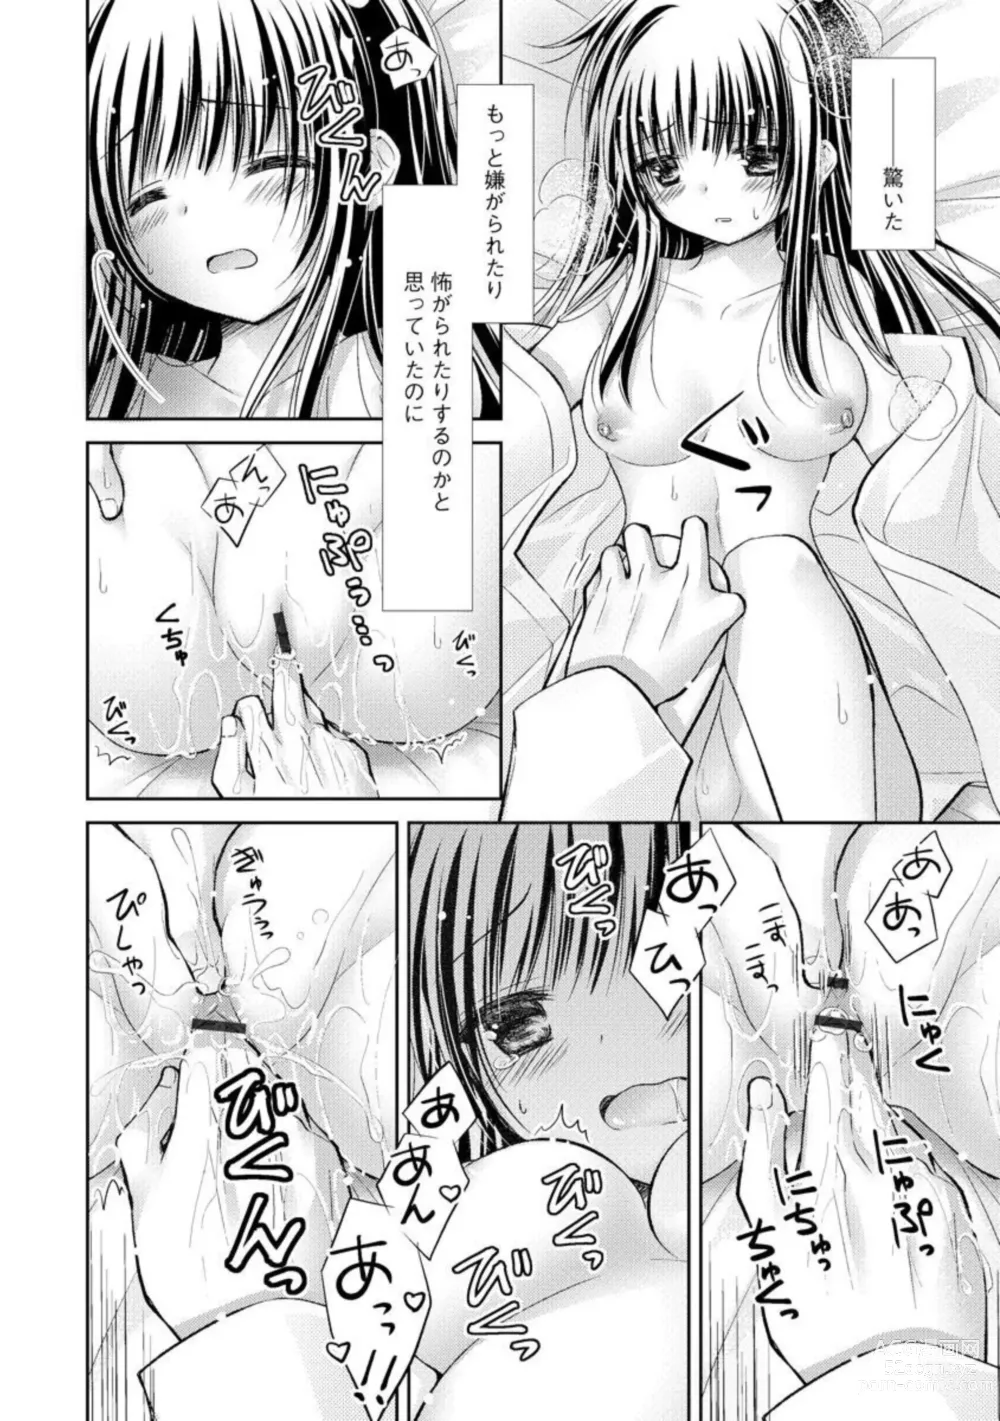 Page 16 of manga Aishin Retoroshizumu 1